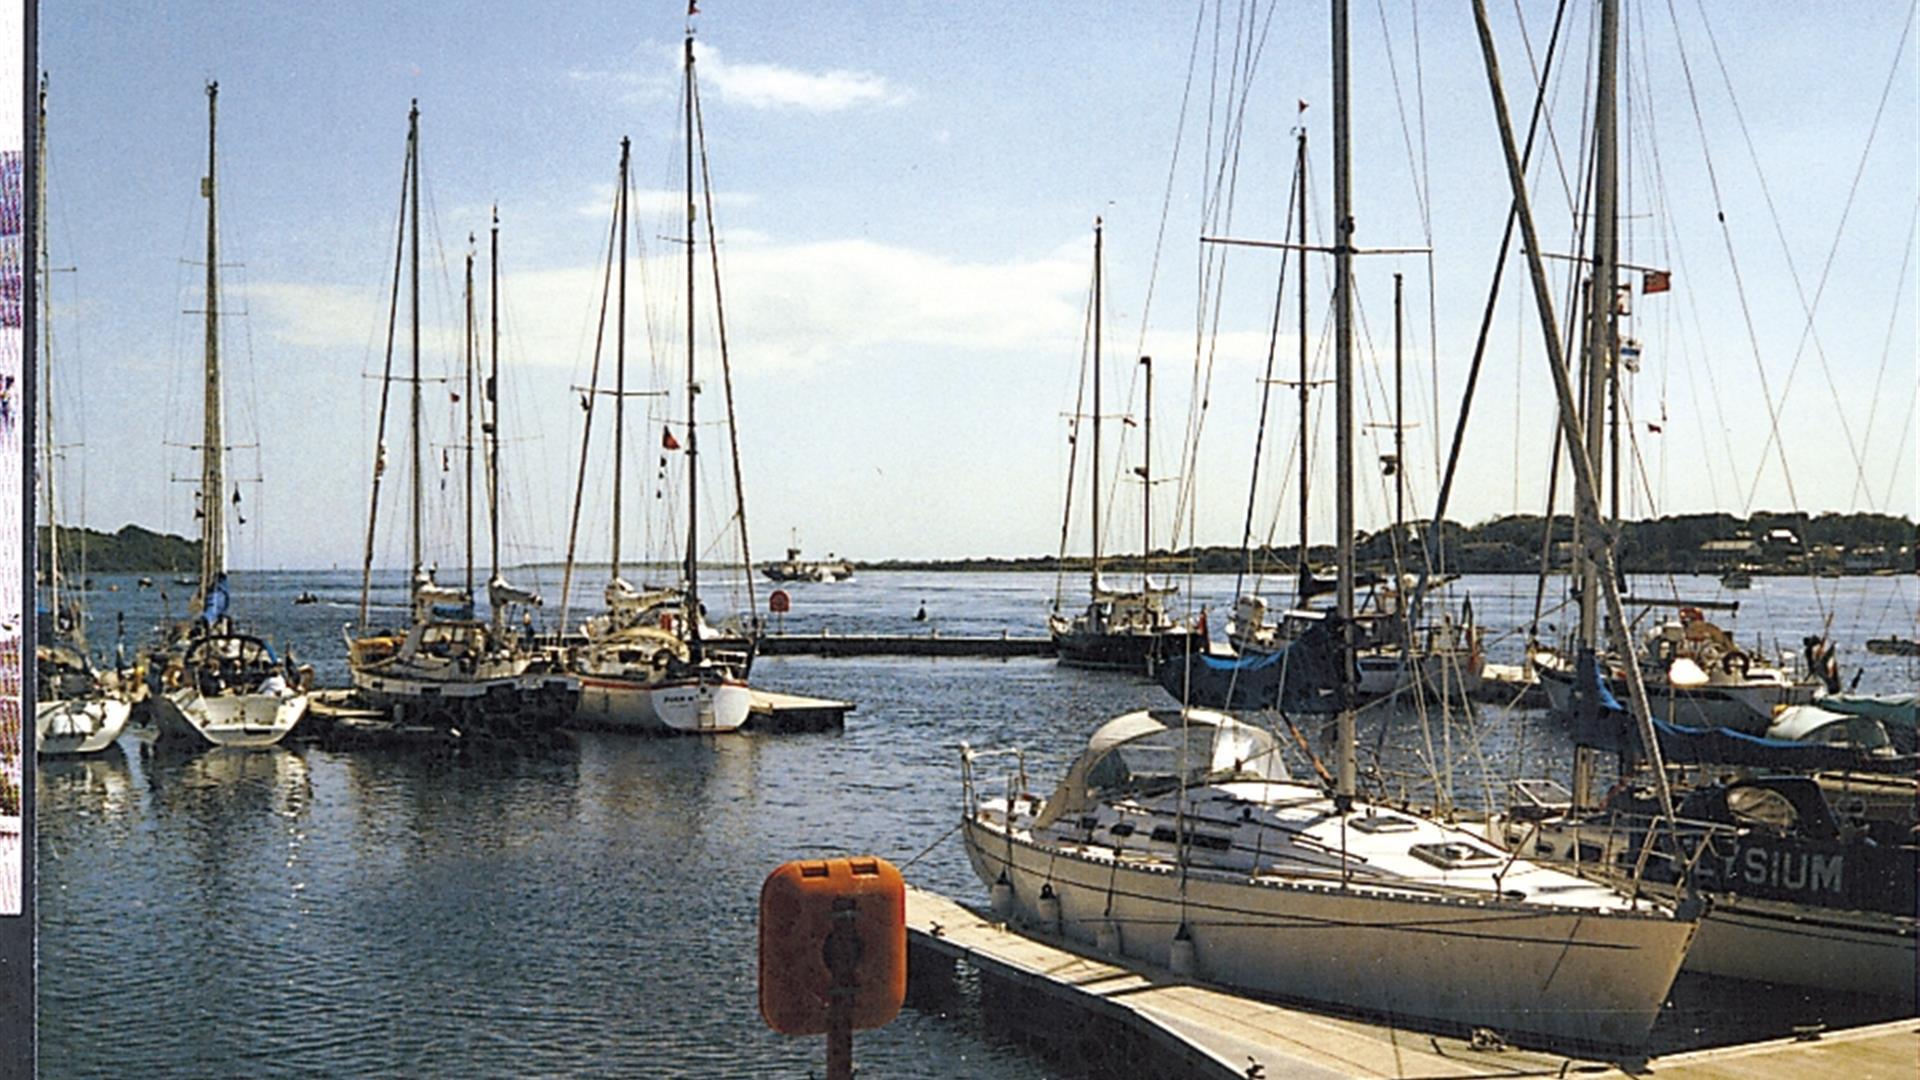 Portaferry Marina